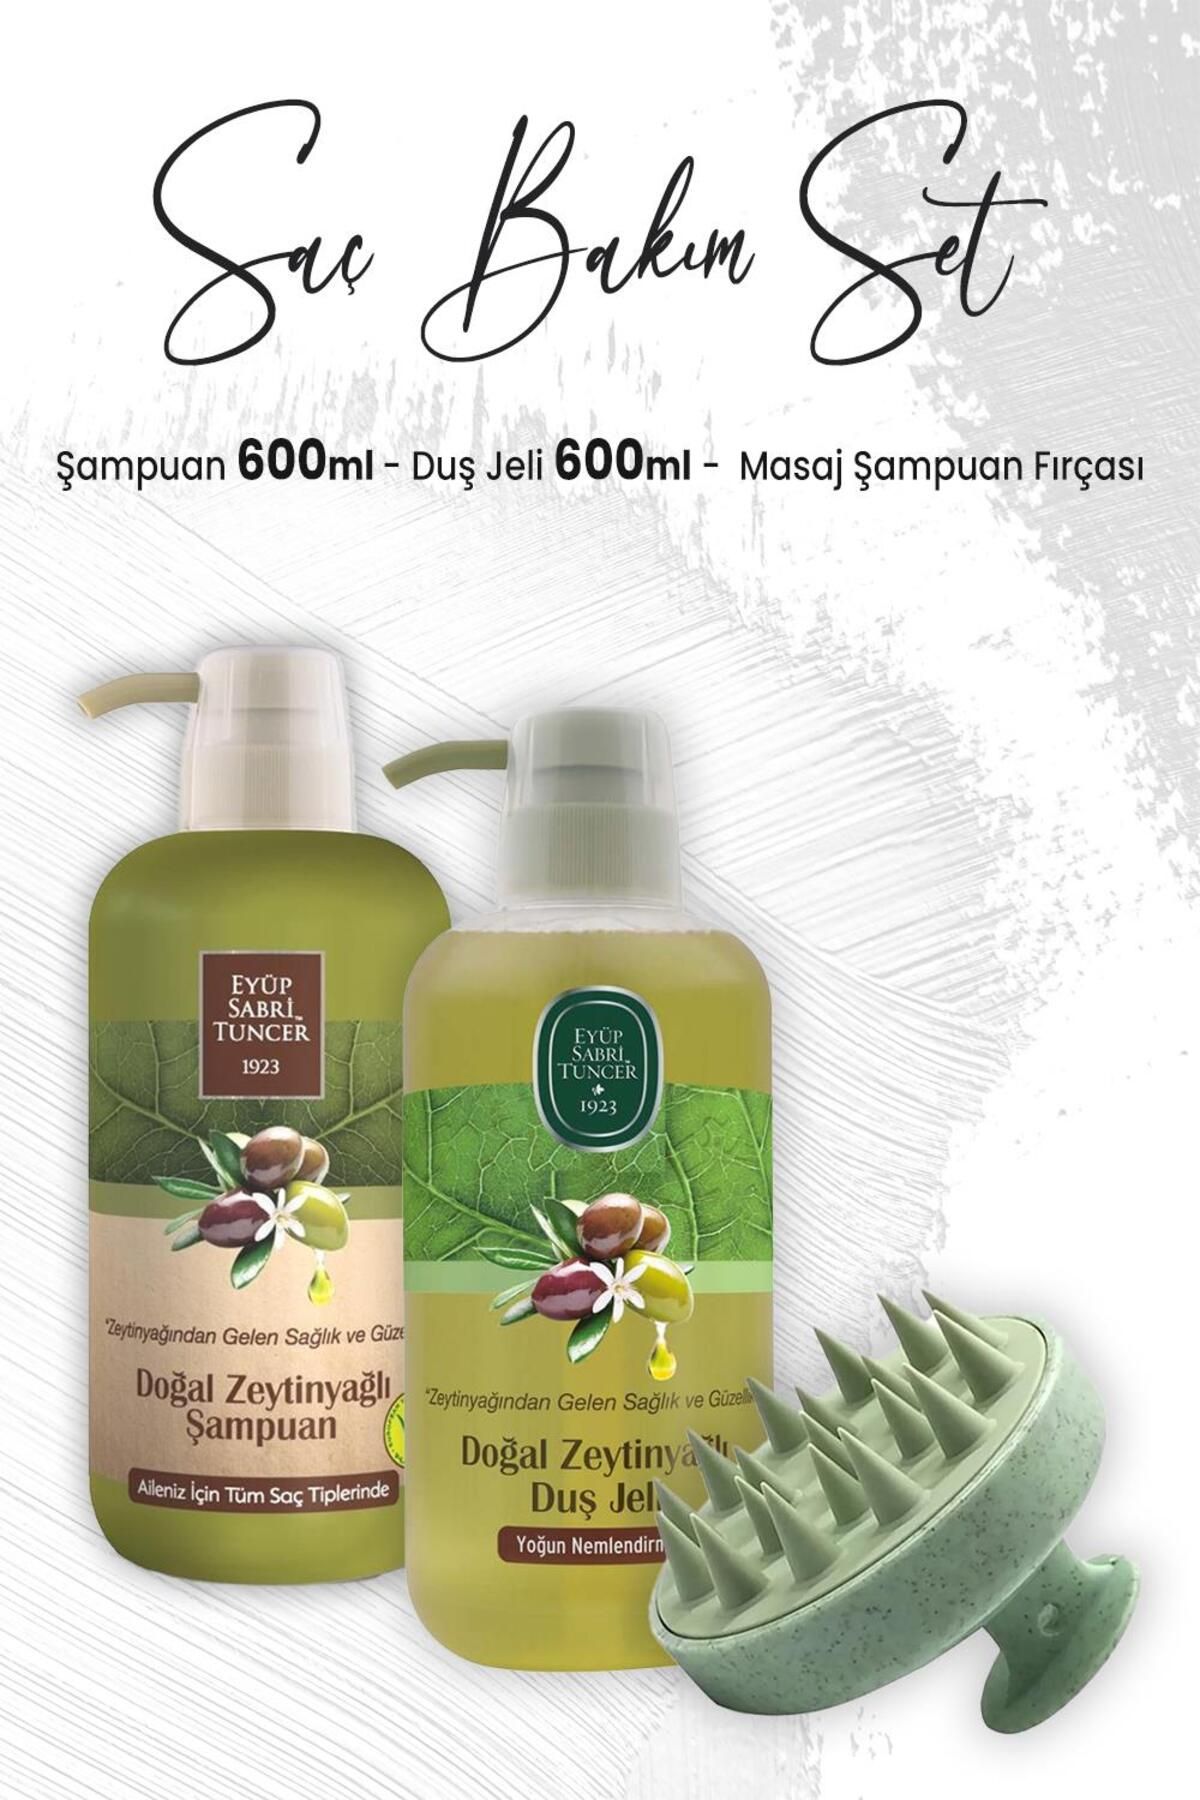 Eyüp Sabri Tuncer Doğal Zeytinyağlı Şampuan 600 Ml, Duş Jeli 600 ml Ve Masaj Şampuan Fırçası Yeşil